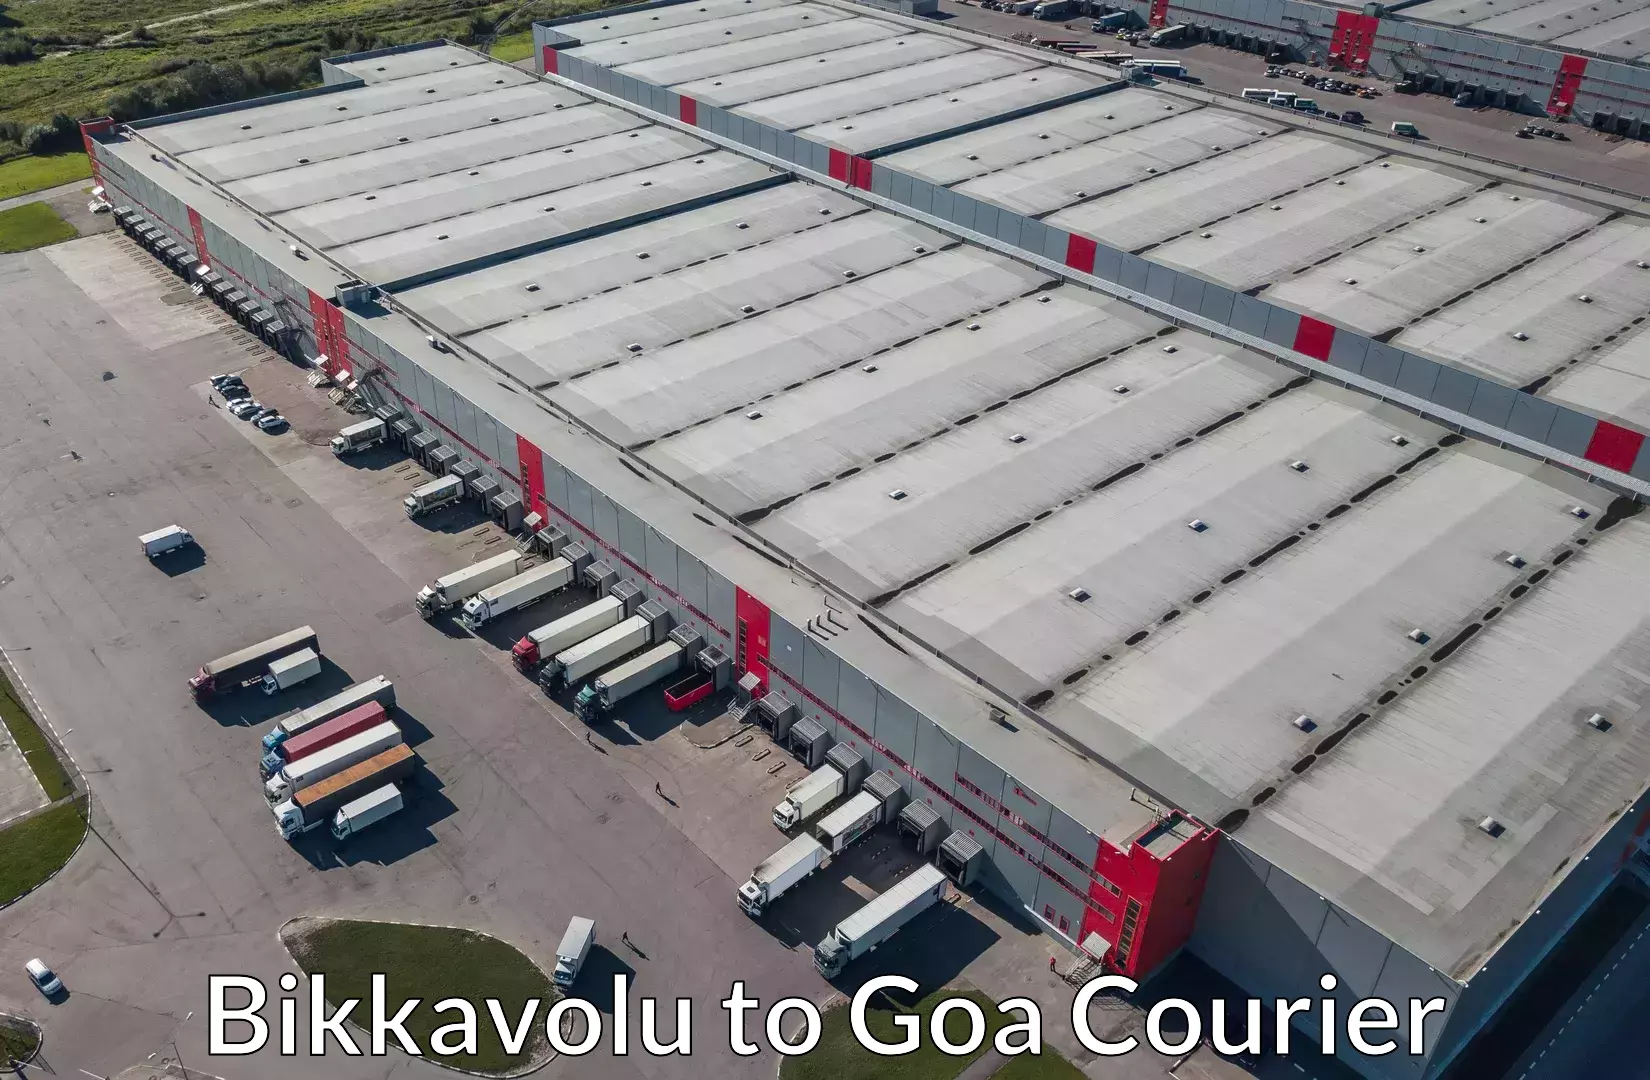 Cost-effective moving solutions Bikkavolu to Goa